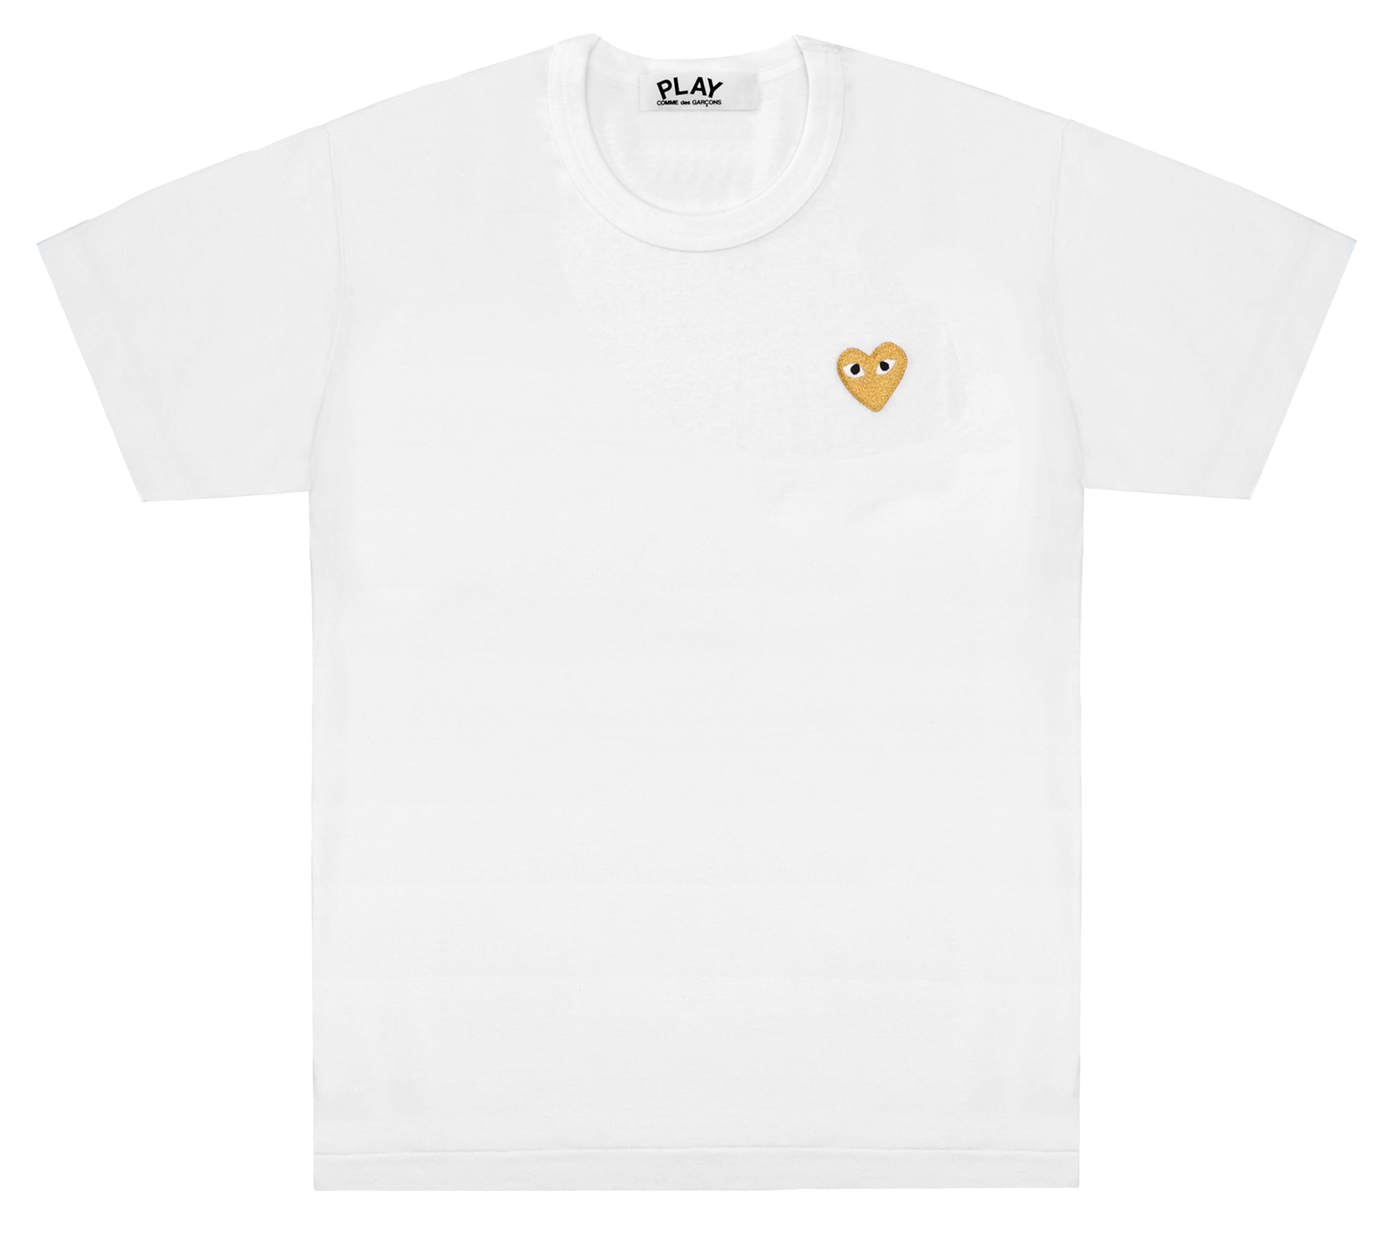     Comme-des-Garcons-Play-T-Shirt-With-Gold-Emblem-Men-White-1